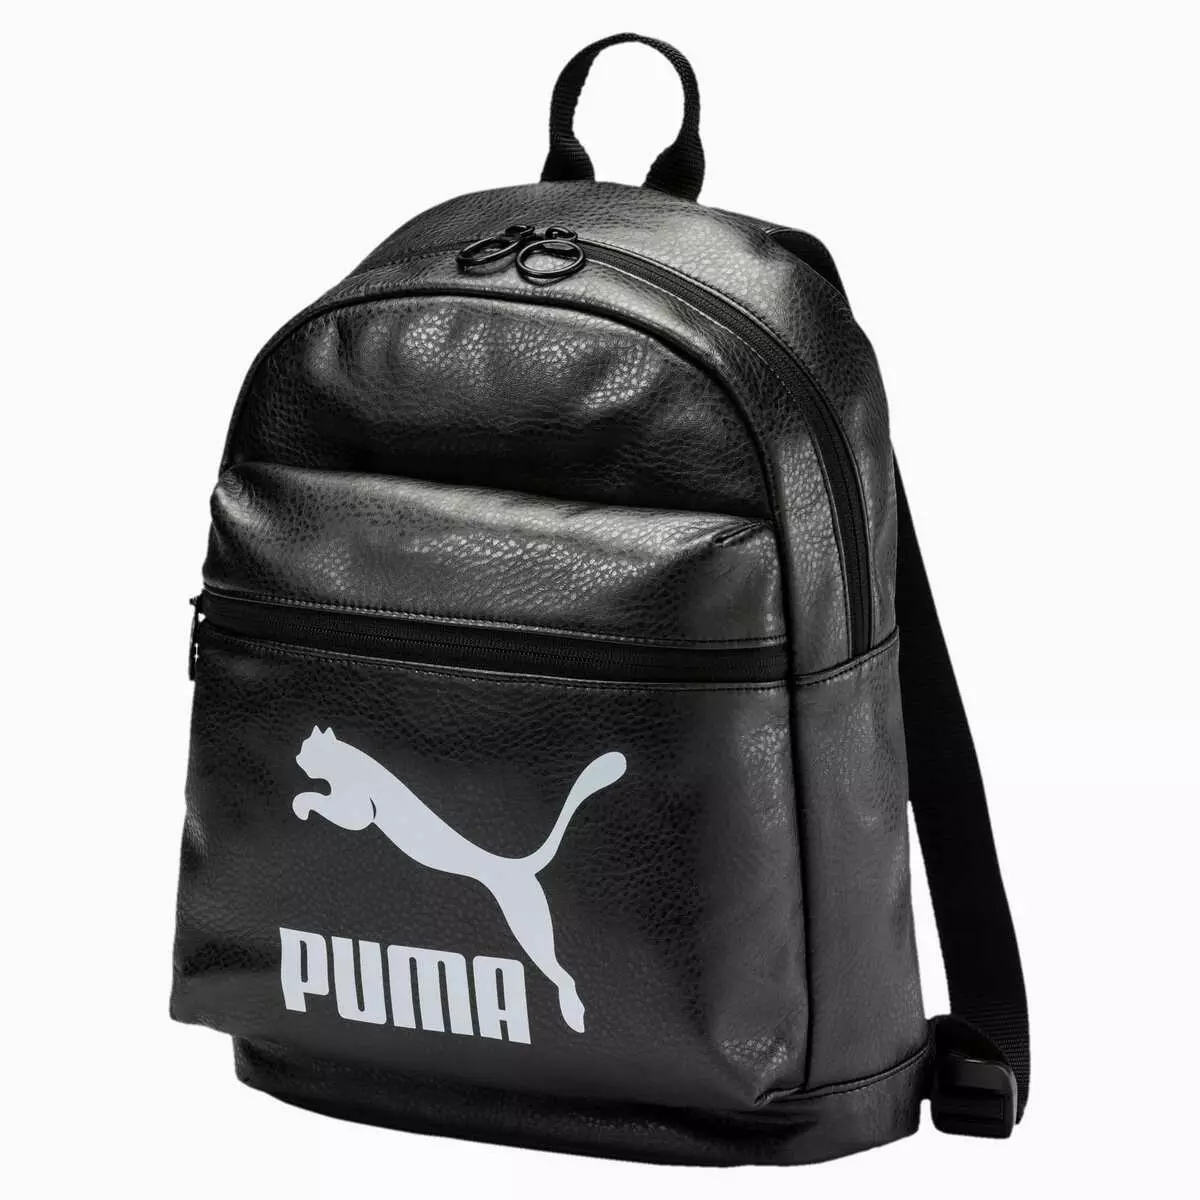 Puma rygsække: Kvinde og mænd, sort, lyserød, lædersport, runde og andre originale modeller. Sådan vasker du det rigtigt? 15396_43